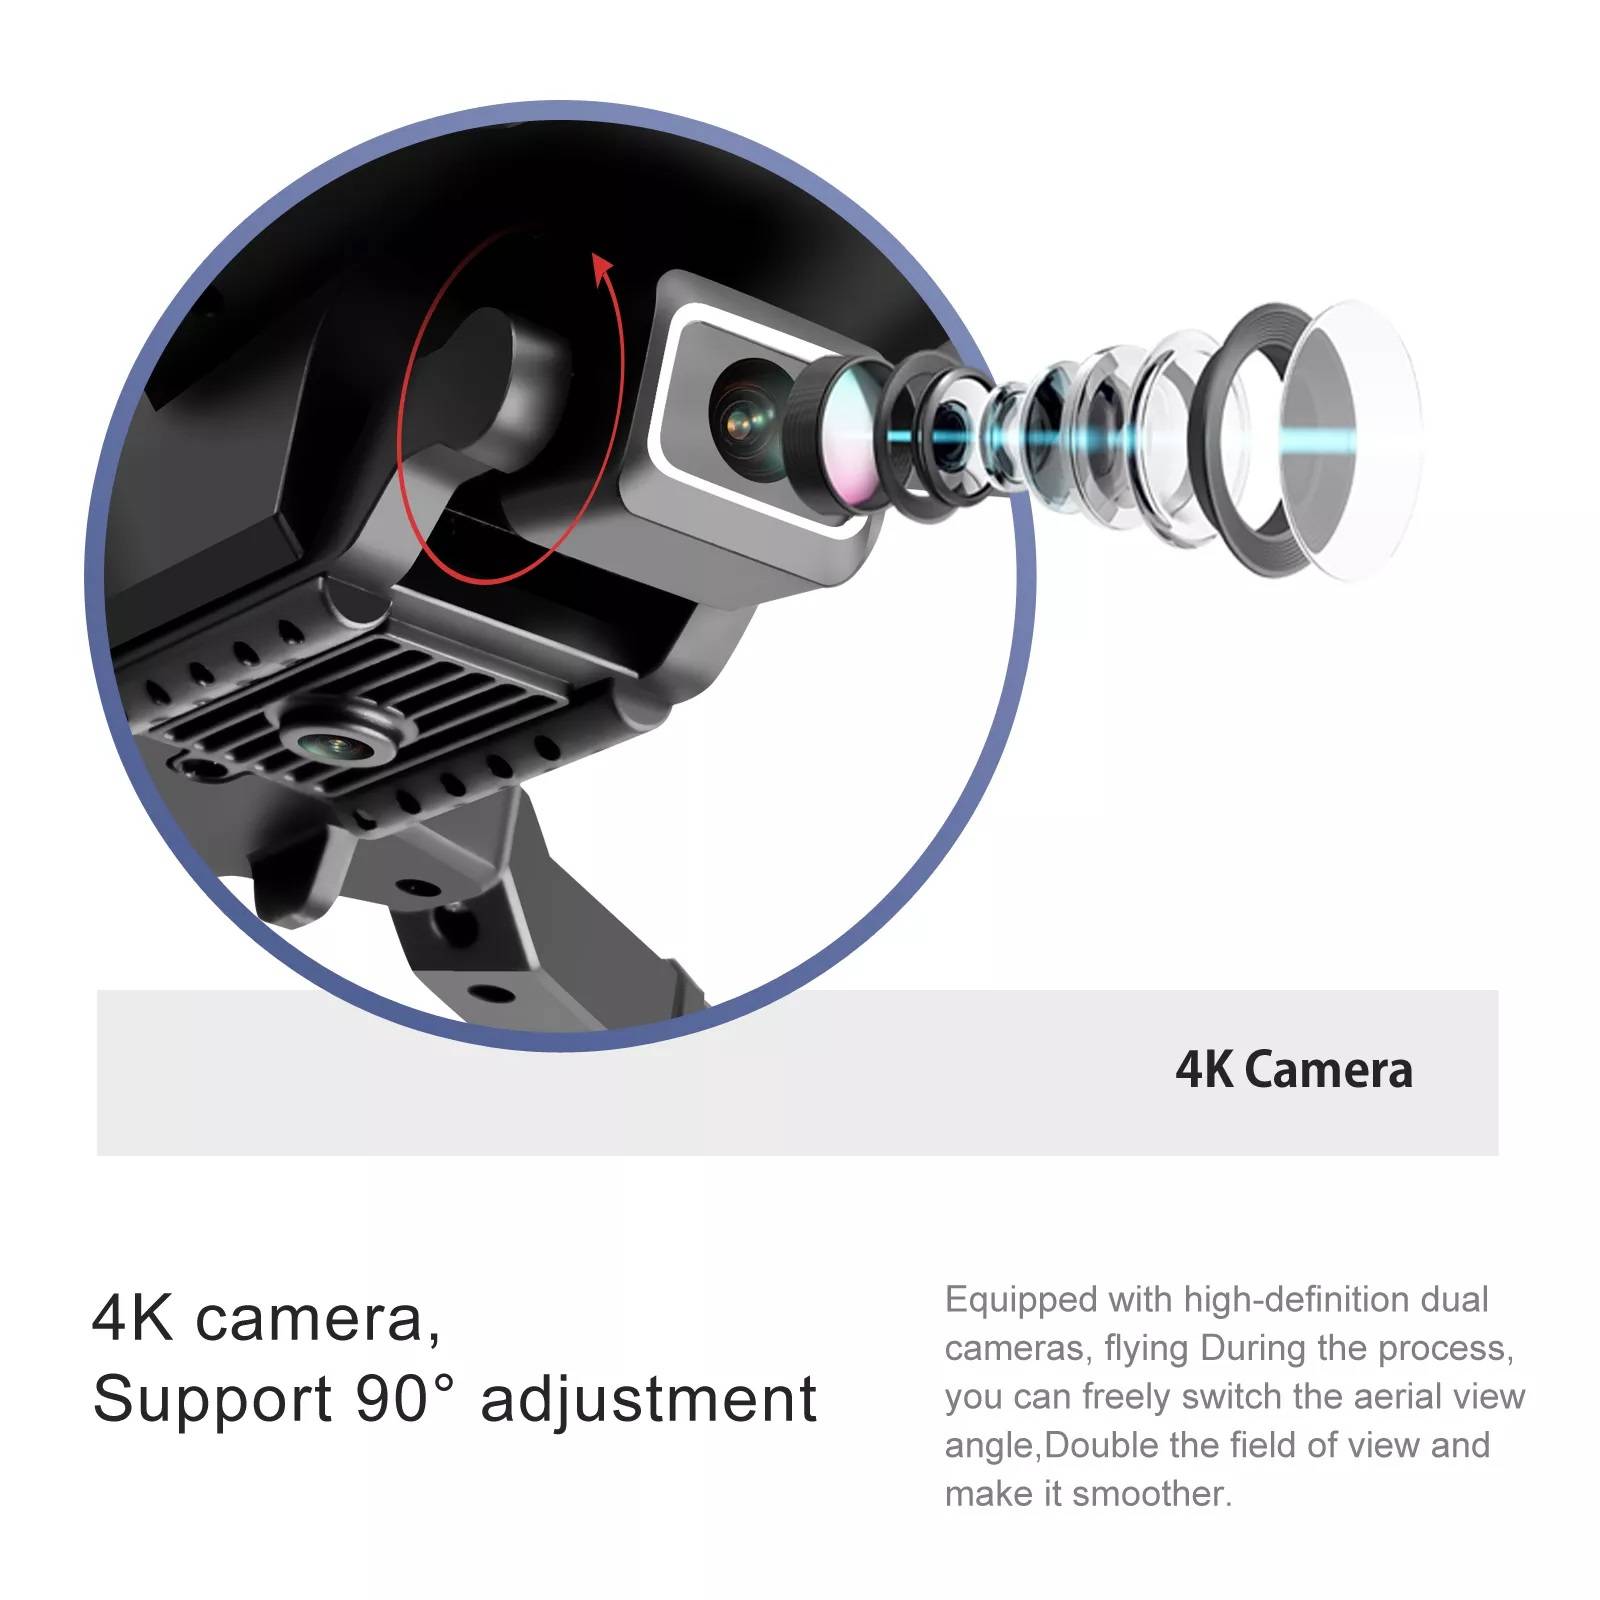 دارای یک دوربین 4K باقابلیت تنظیم زاویه لنز تا 90 درجه